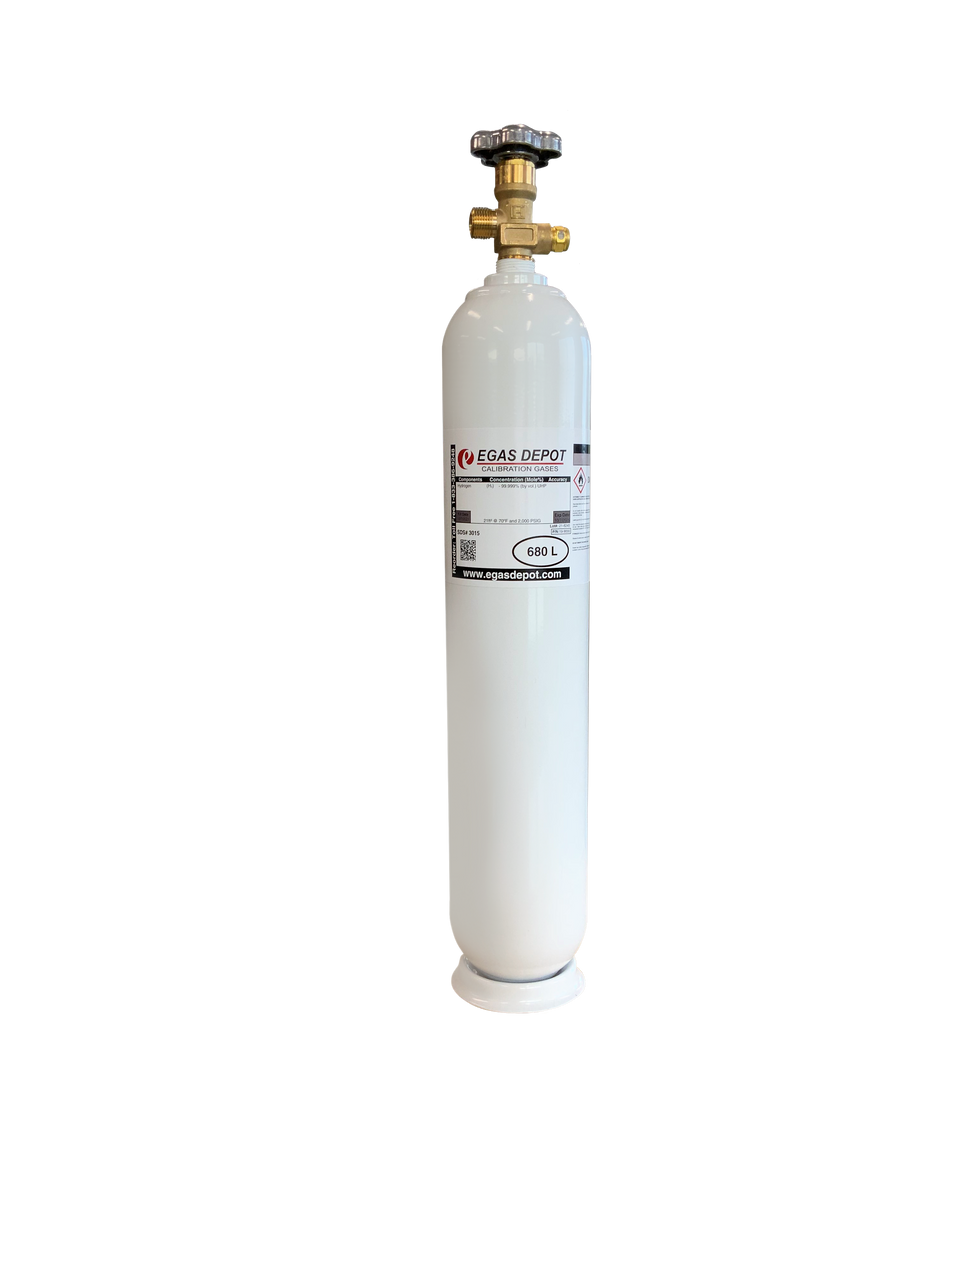 CH4 300 ppm/ Air 680 Liter calibration gas